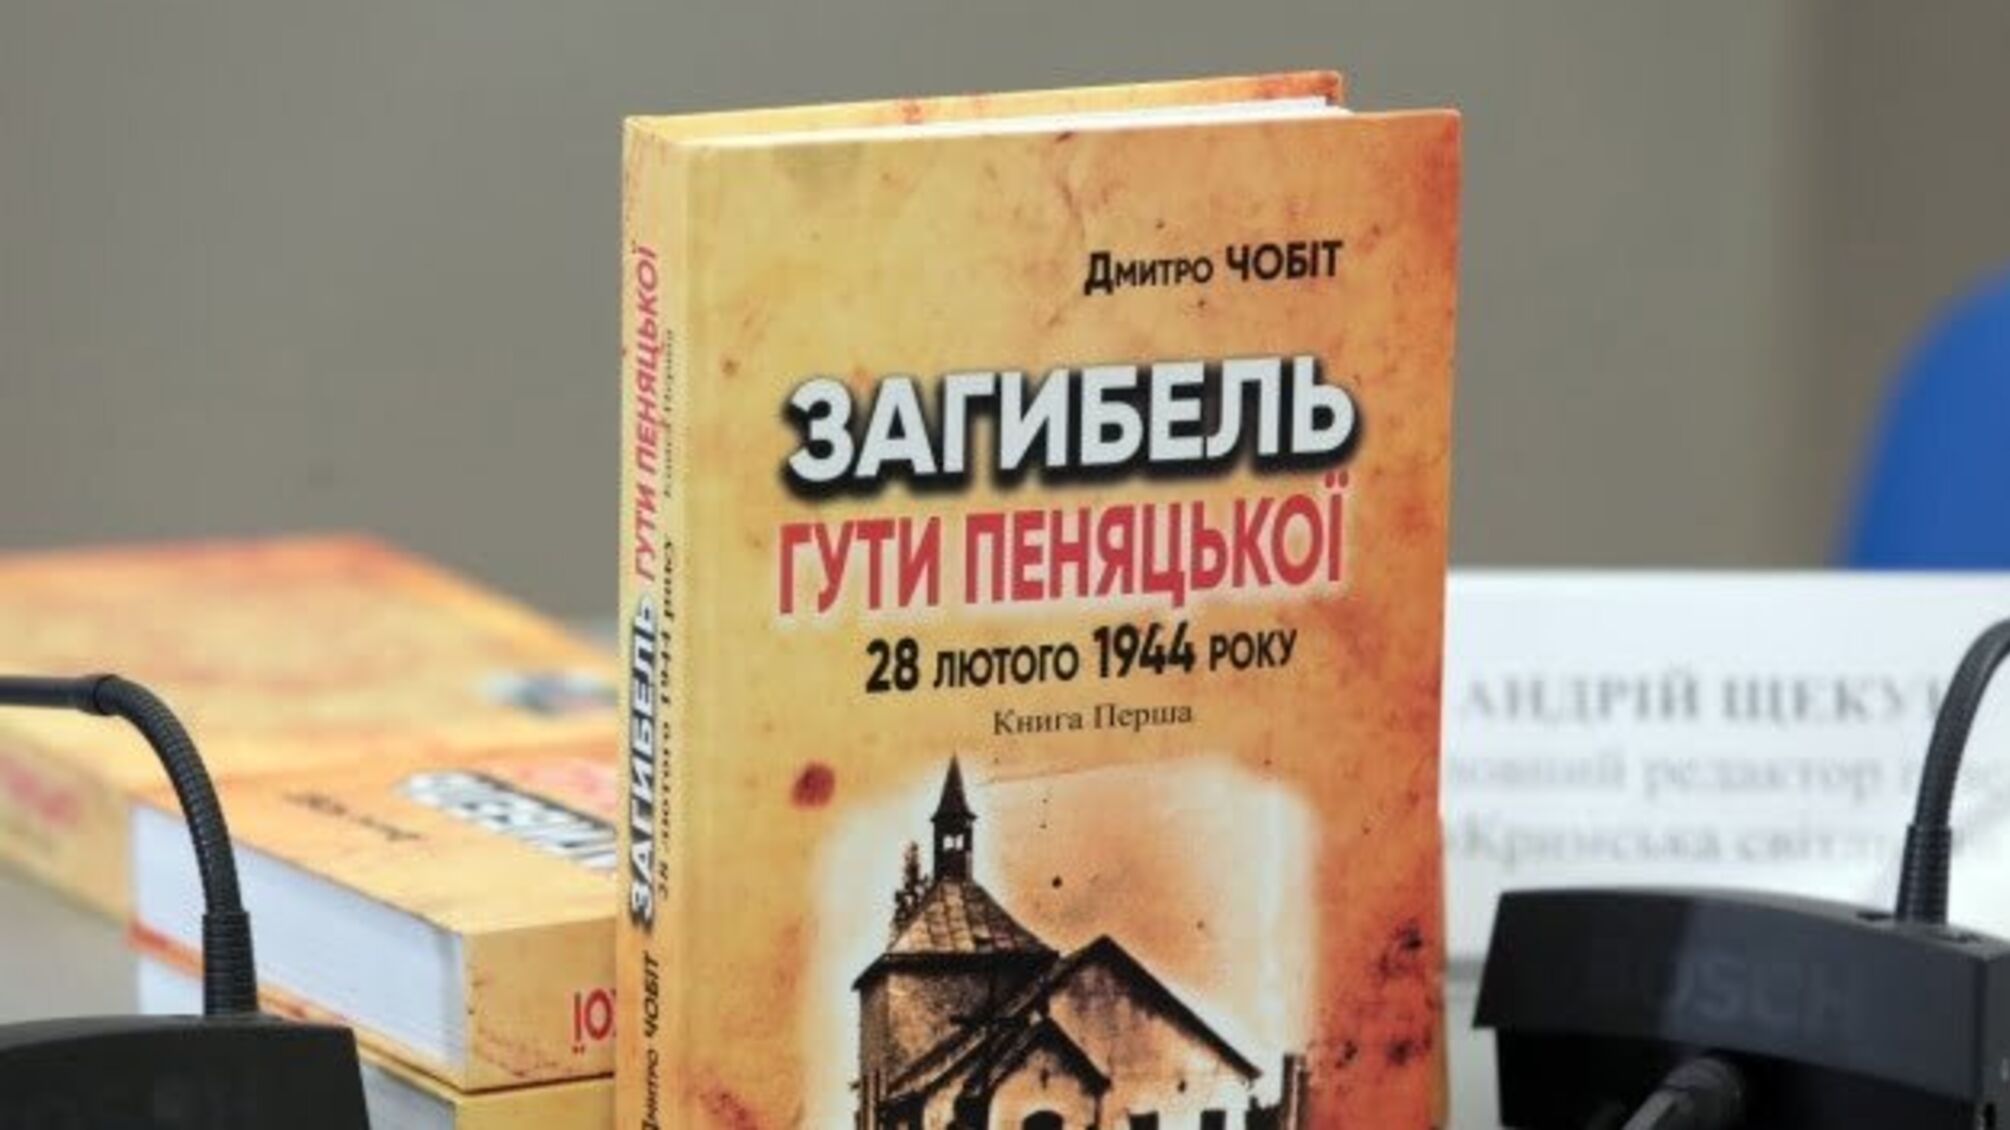 Вийшла книга, яка розвінчує міфи про трагедію села Гута Пеняцька в 1944 році